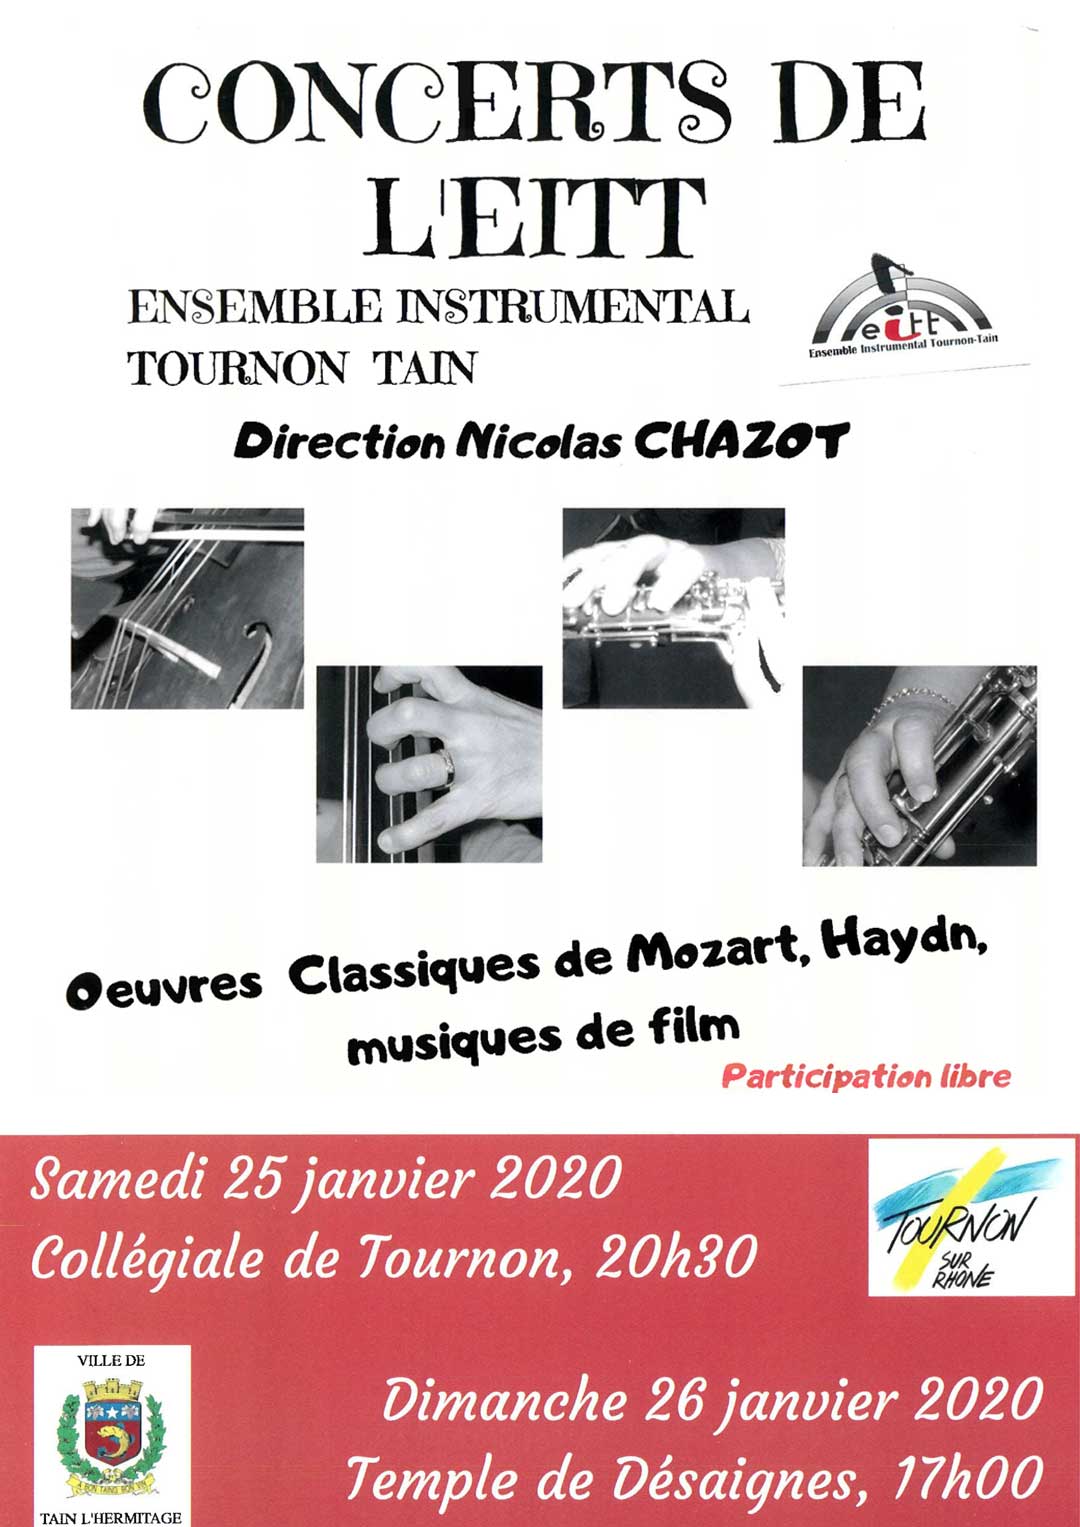 Concert de l'EITT. Samedi 25 et Dimanche 26 janvier 2020. Collégiale Saint julien.